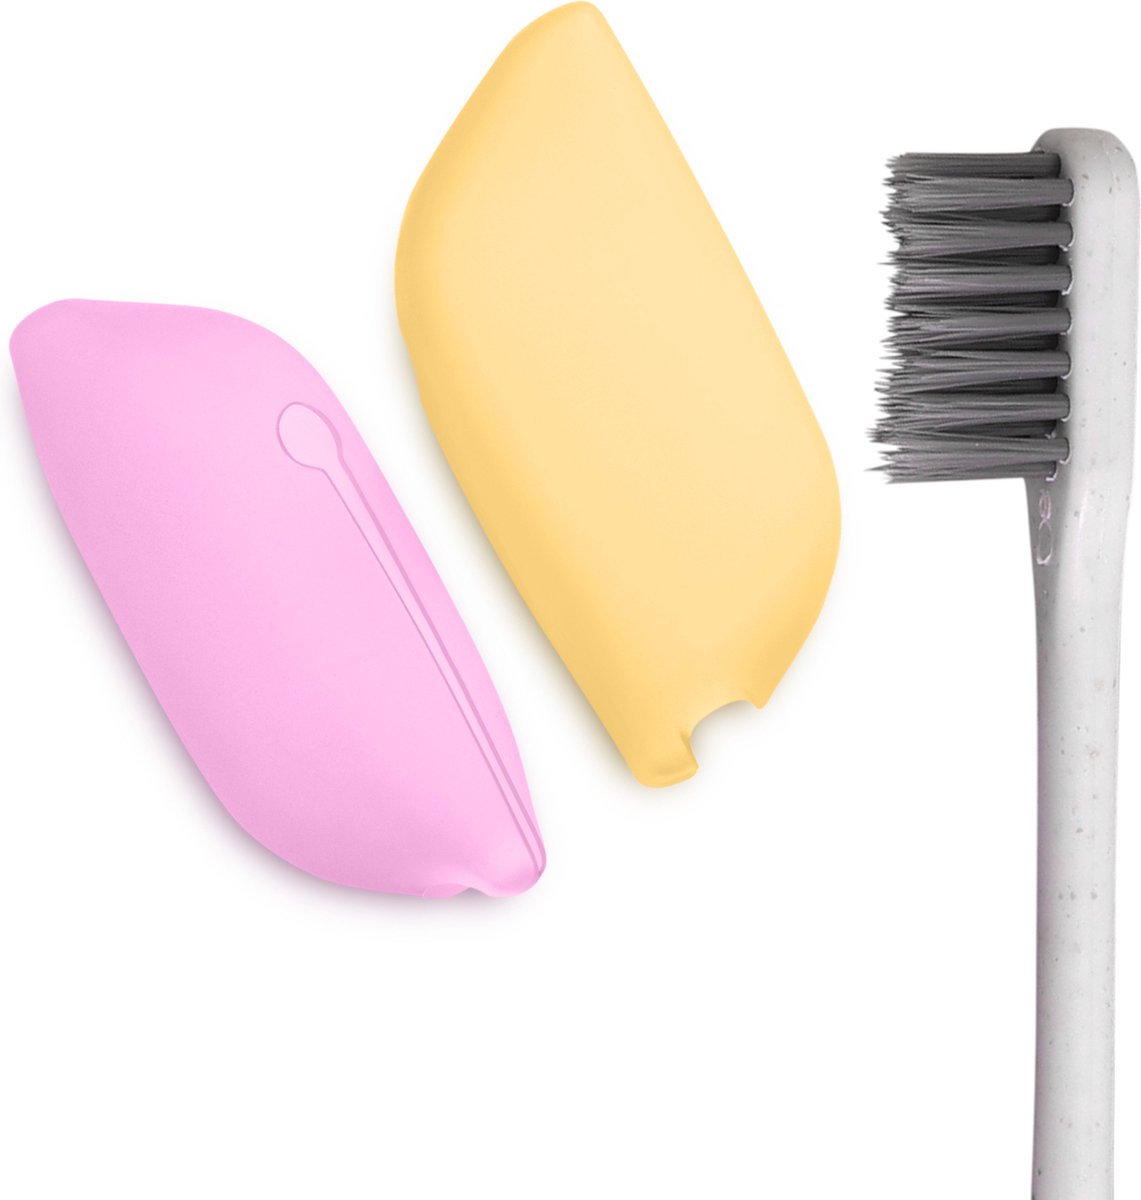 kwmobile 2x tandenborstel kapjes - Case van siliconen - Opbergdoosje voor tandenborstels in paars / geel - Reisetui